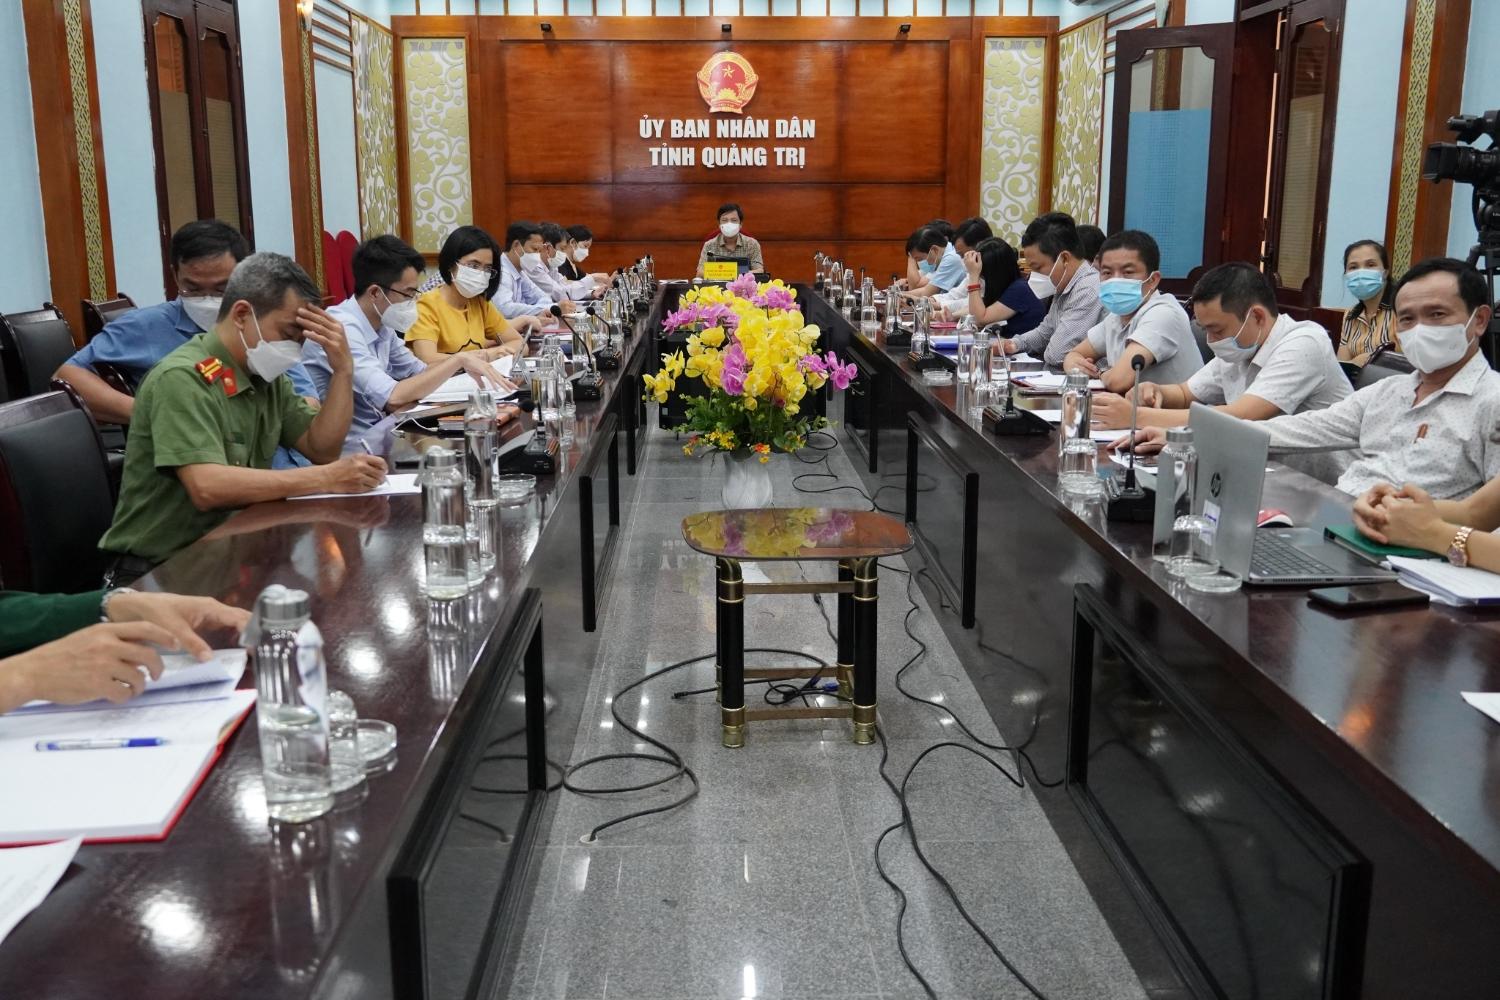 Tỉnh Quảng Trị tham dự Hội nghị trực tuyến Giao ban toàn quốc công tác phi chính phủ nước ngoài...